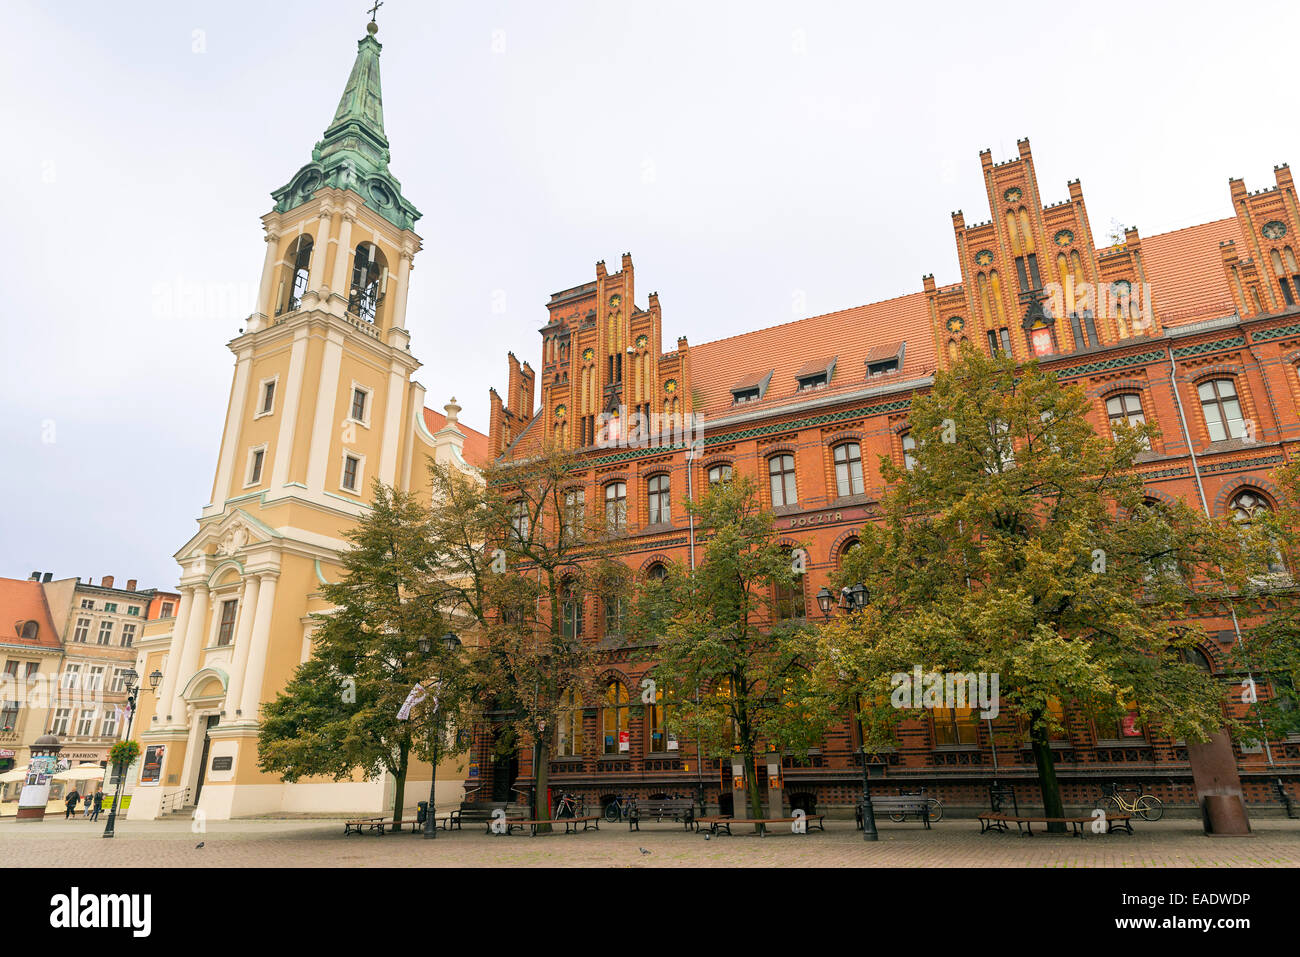 TORUN, Polen - 23. Oktober 2014: Die mittelalterliche Stadt, Geburtsort des Nicolaus Copernicus, ist unter den UNESCO-Welt-Welterbe aufgeführt Stockfoto